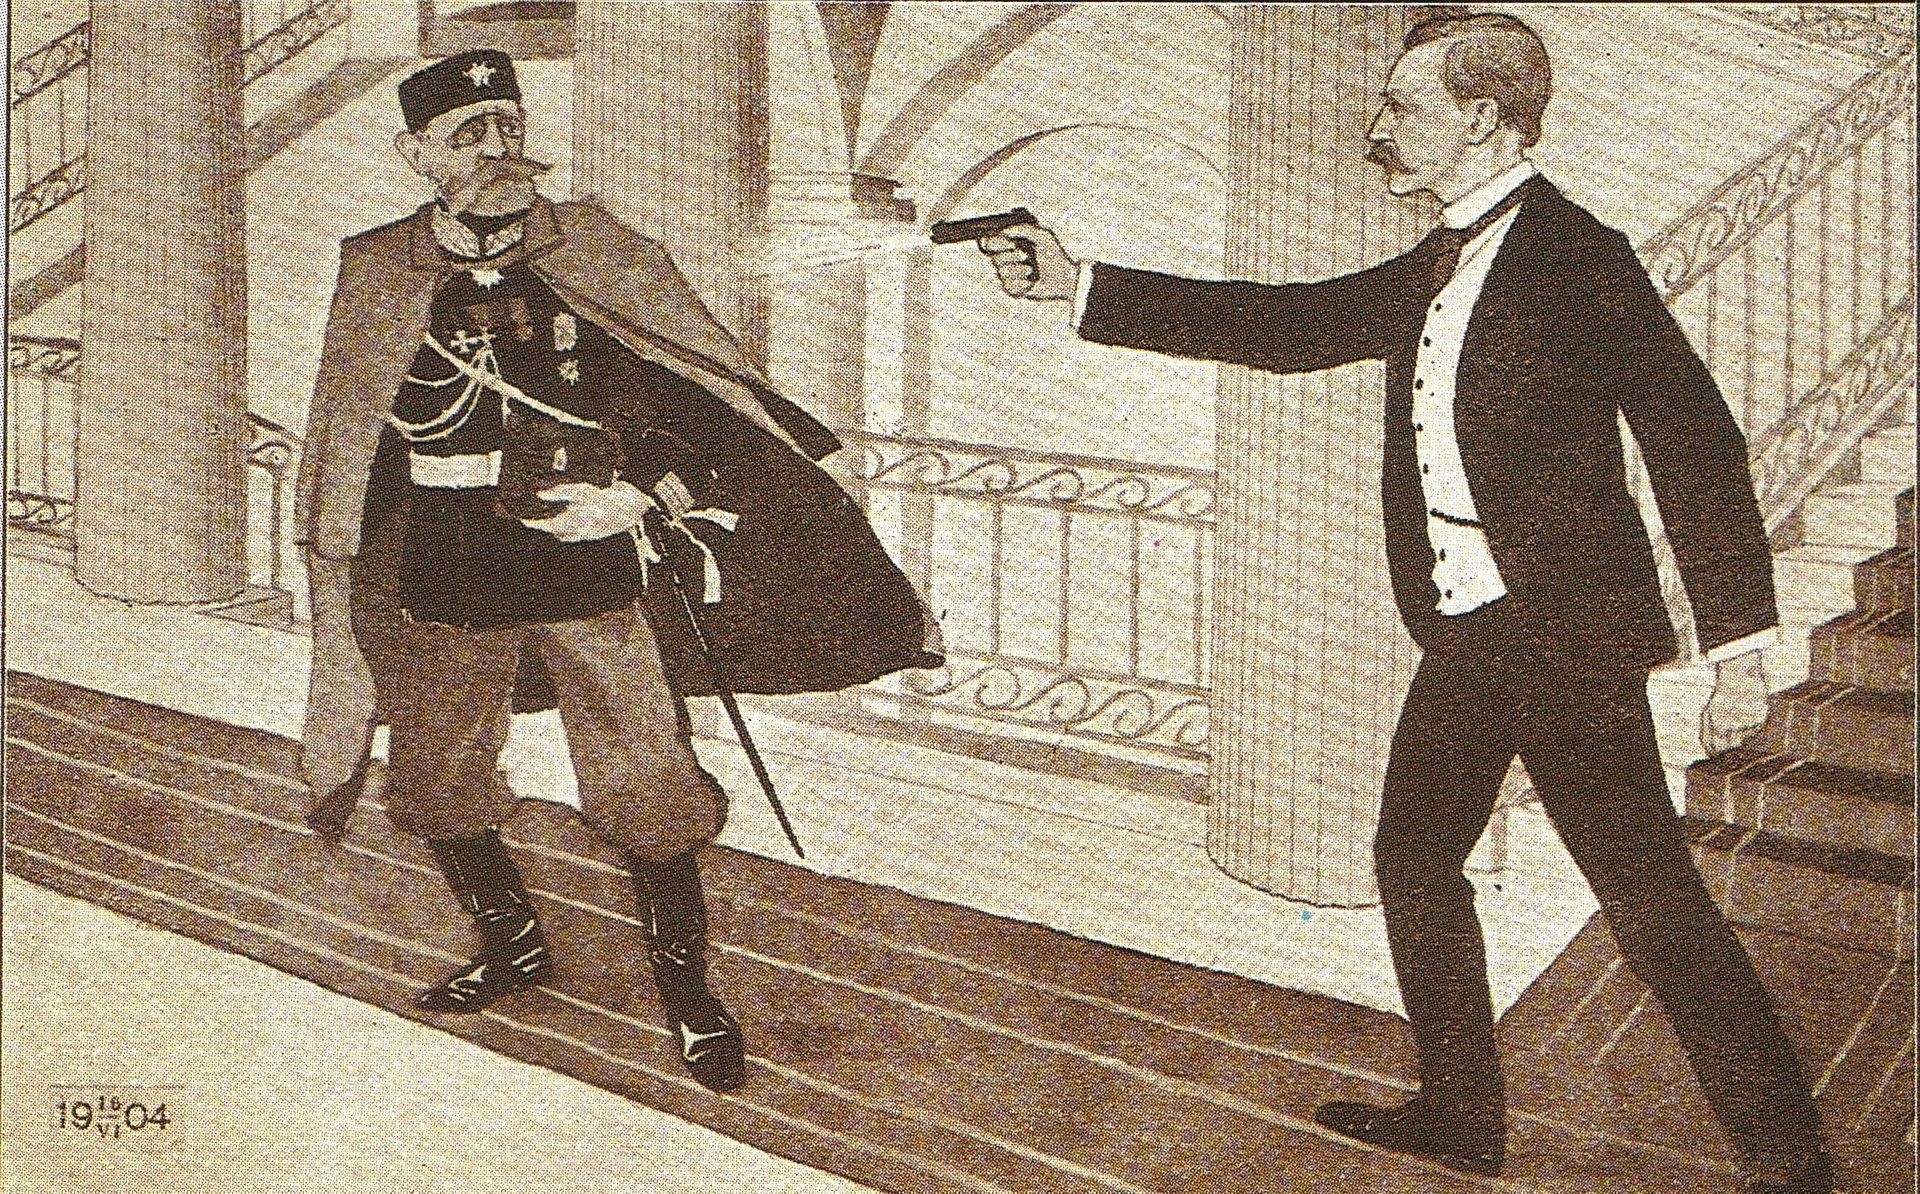 Teckning av kostymklädd Eugen Schauman som skjuter uniformsklädd Bobrikov i finska senatens byggnad.